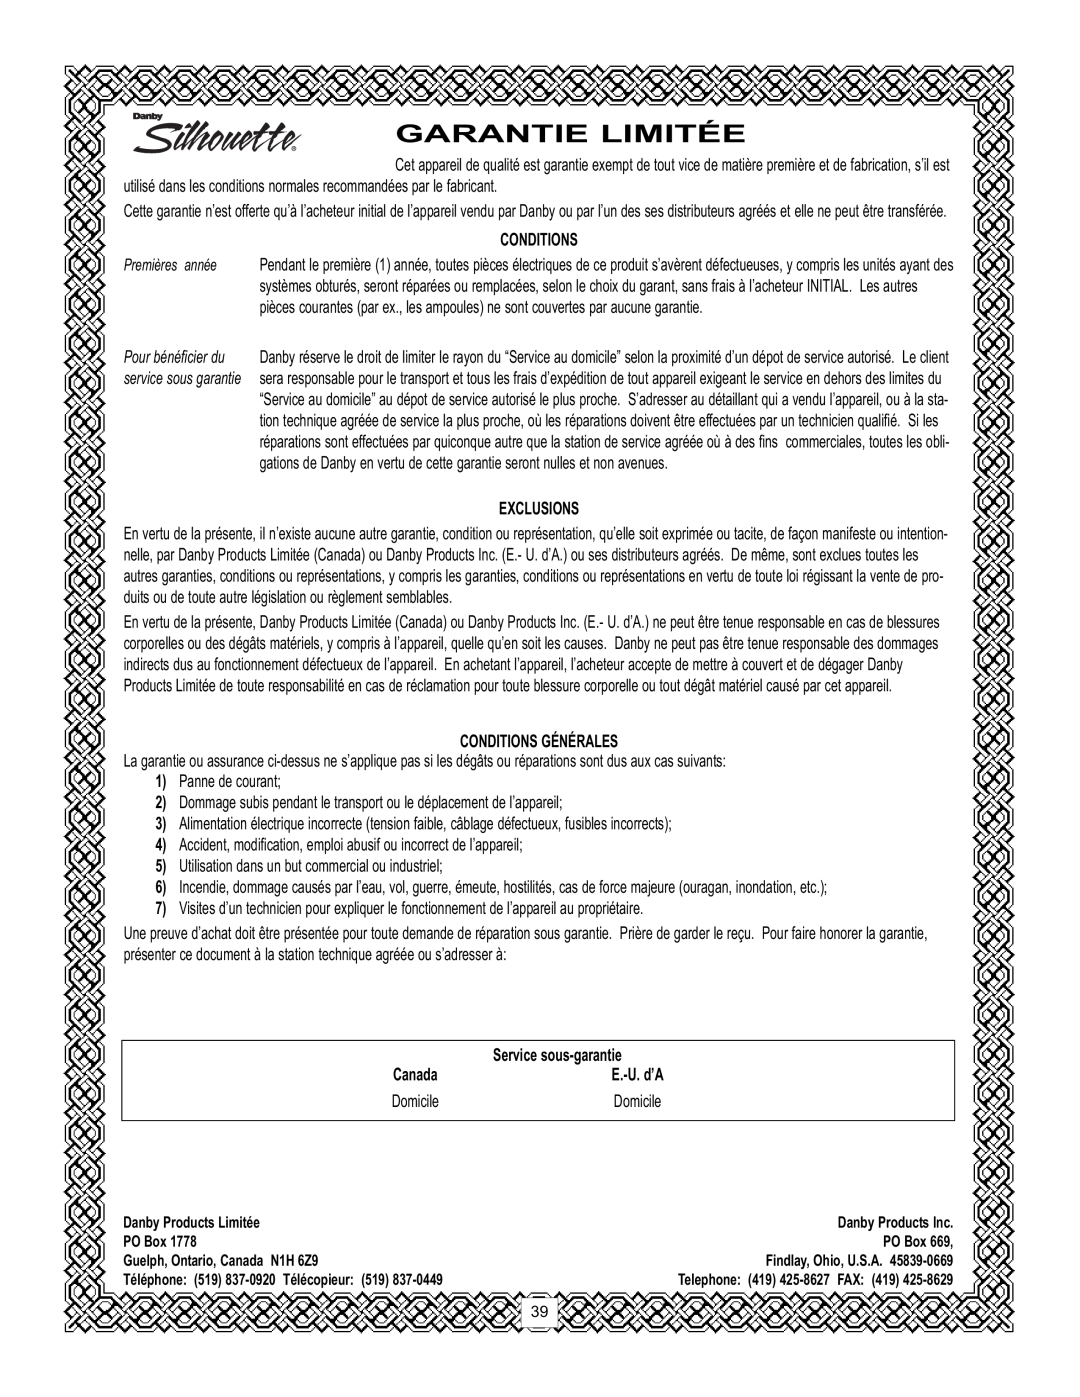 Danby DPAC120061 Garantie Limitée, Exclusions, Conditions Générales, Service sous-garantie, Canada, Domicile 